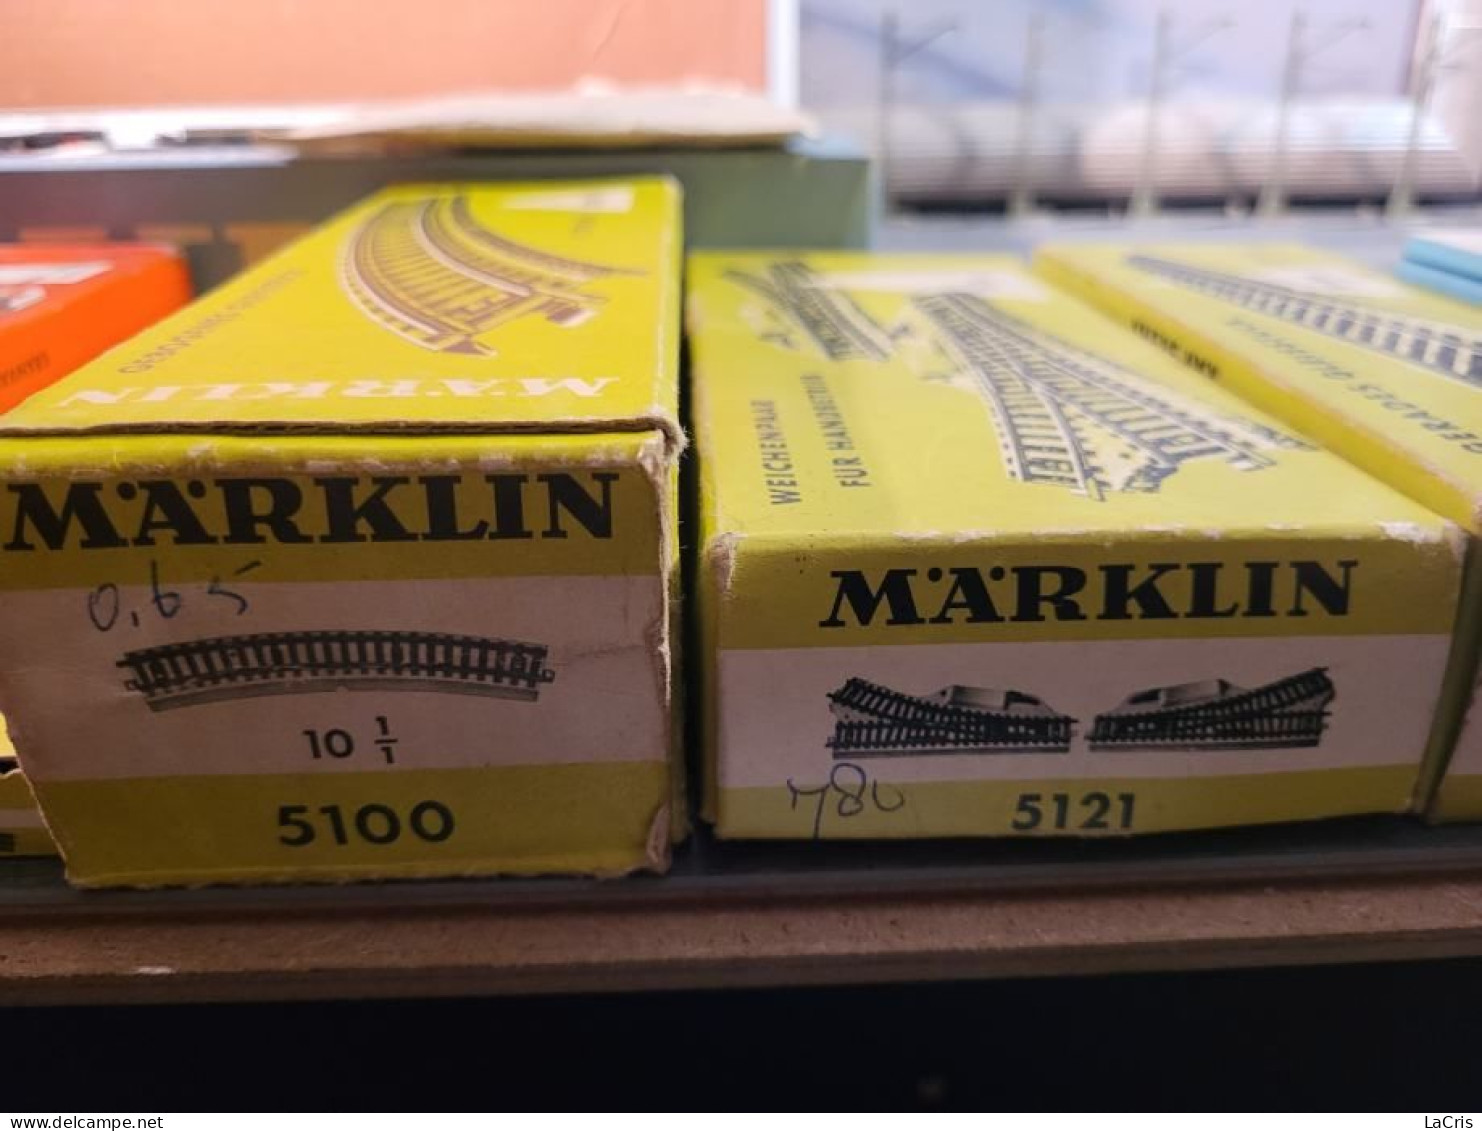 Marklin Collector's Set With Orginal Boxes.